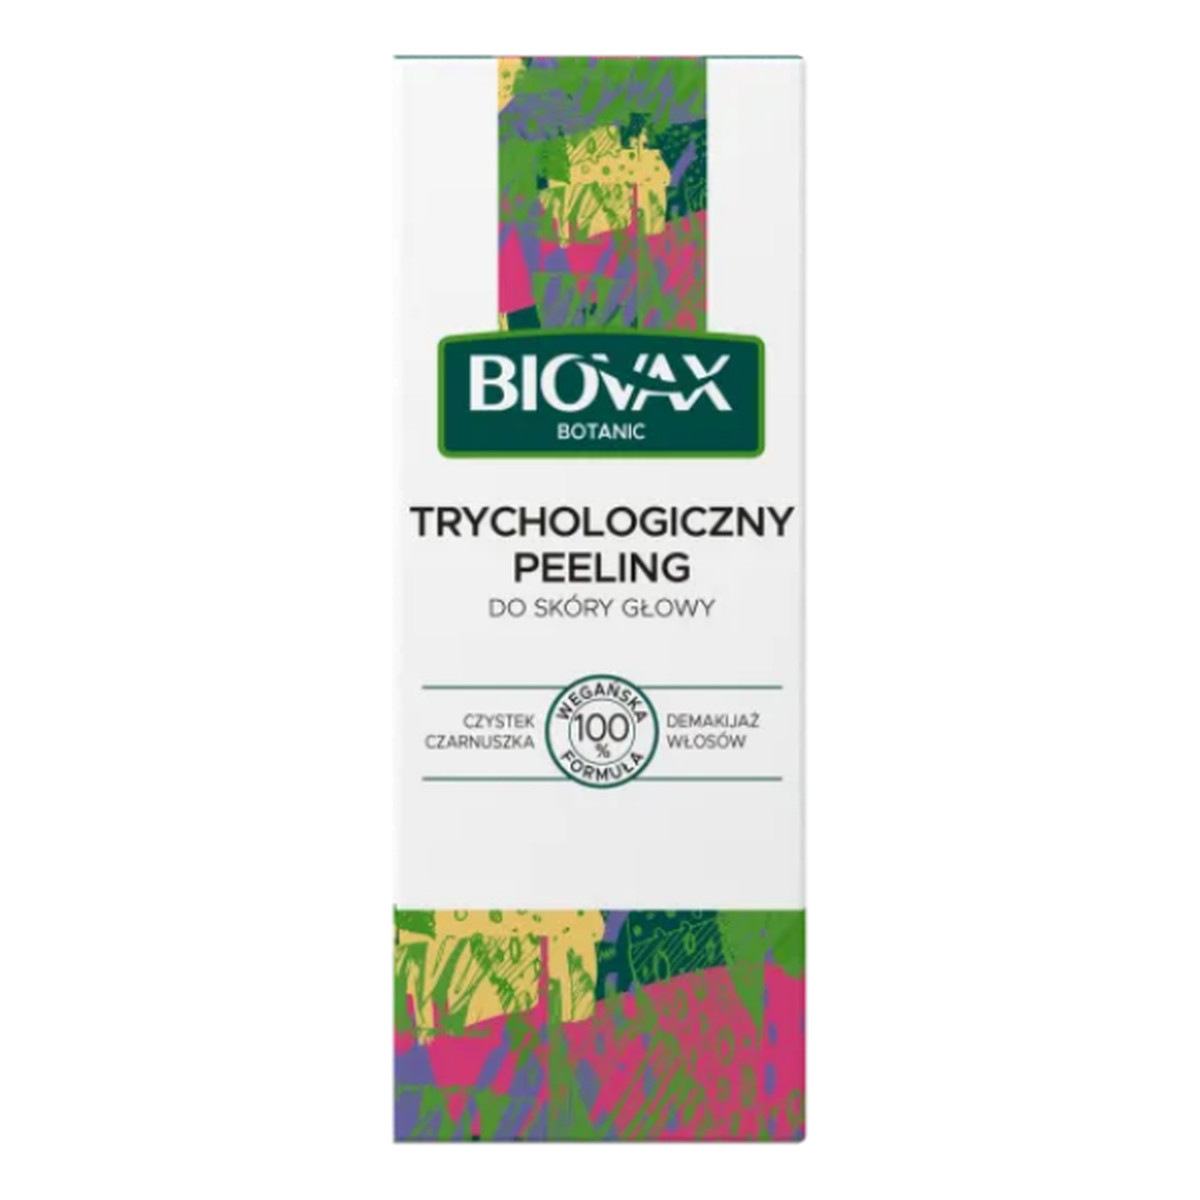 Biovax Botanic Peeling trychologiczny do skóry głowy - Czystek i Czarnuszka 125ml